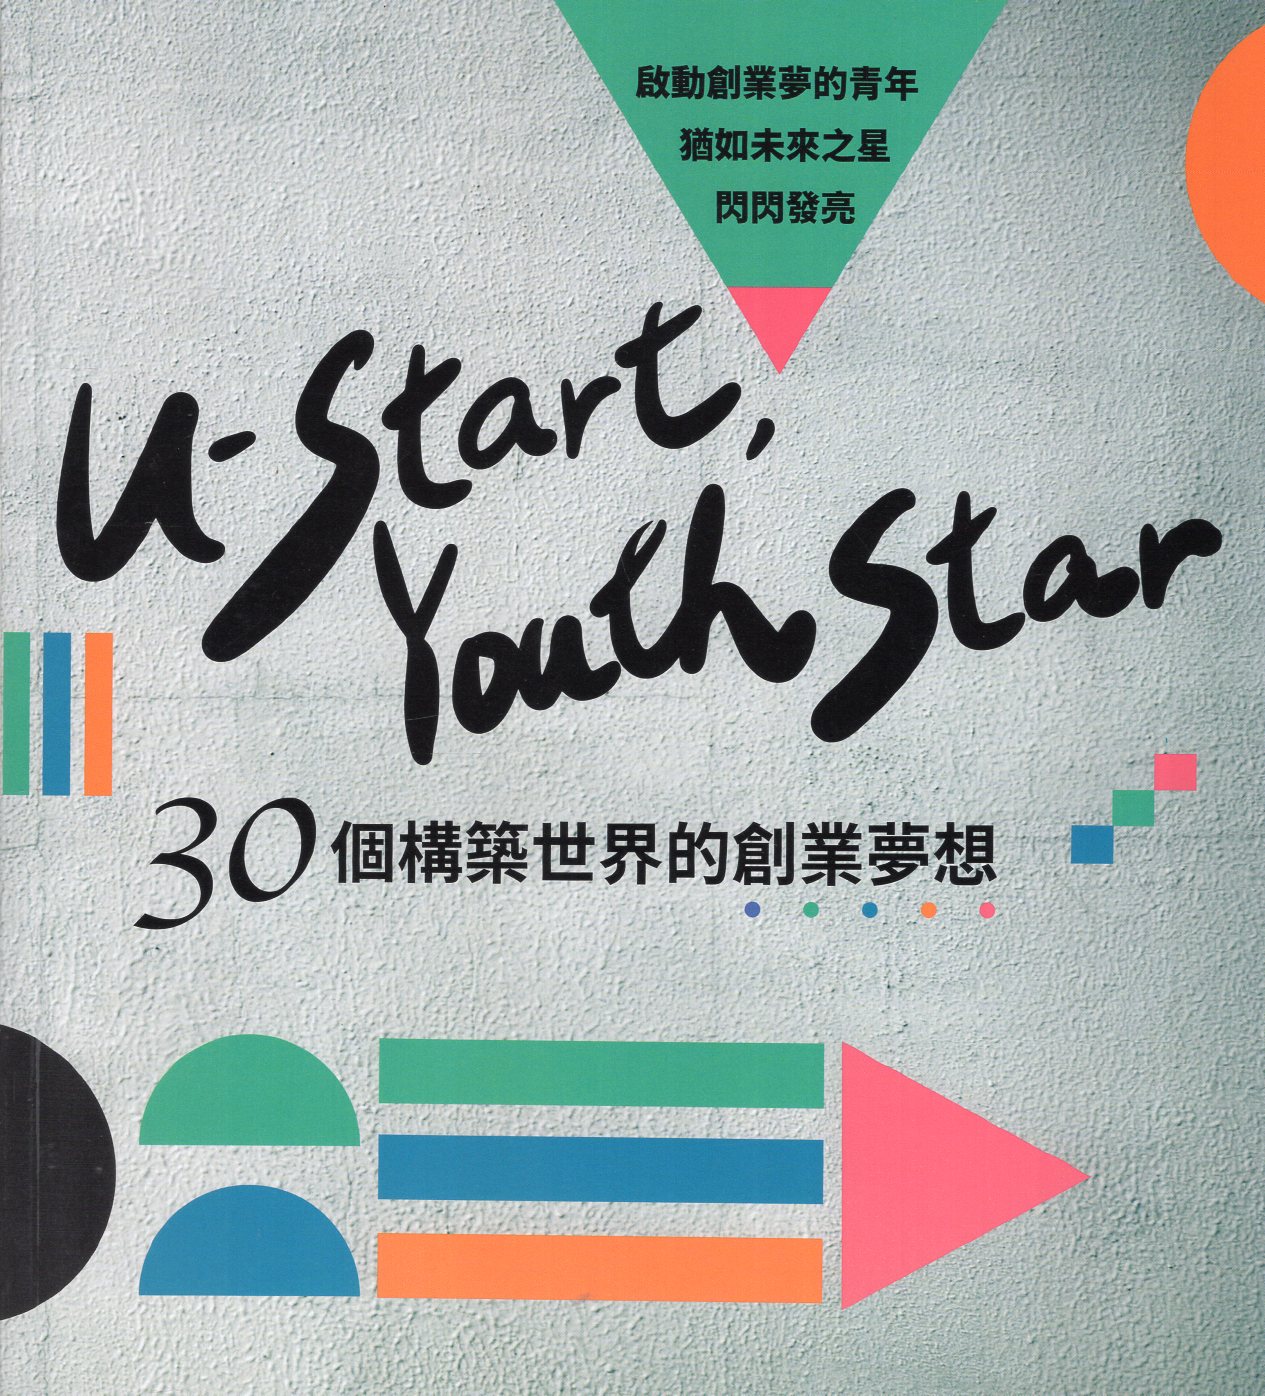 U-start, Youth Star—30個構築世界的創業夢想